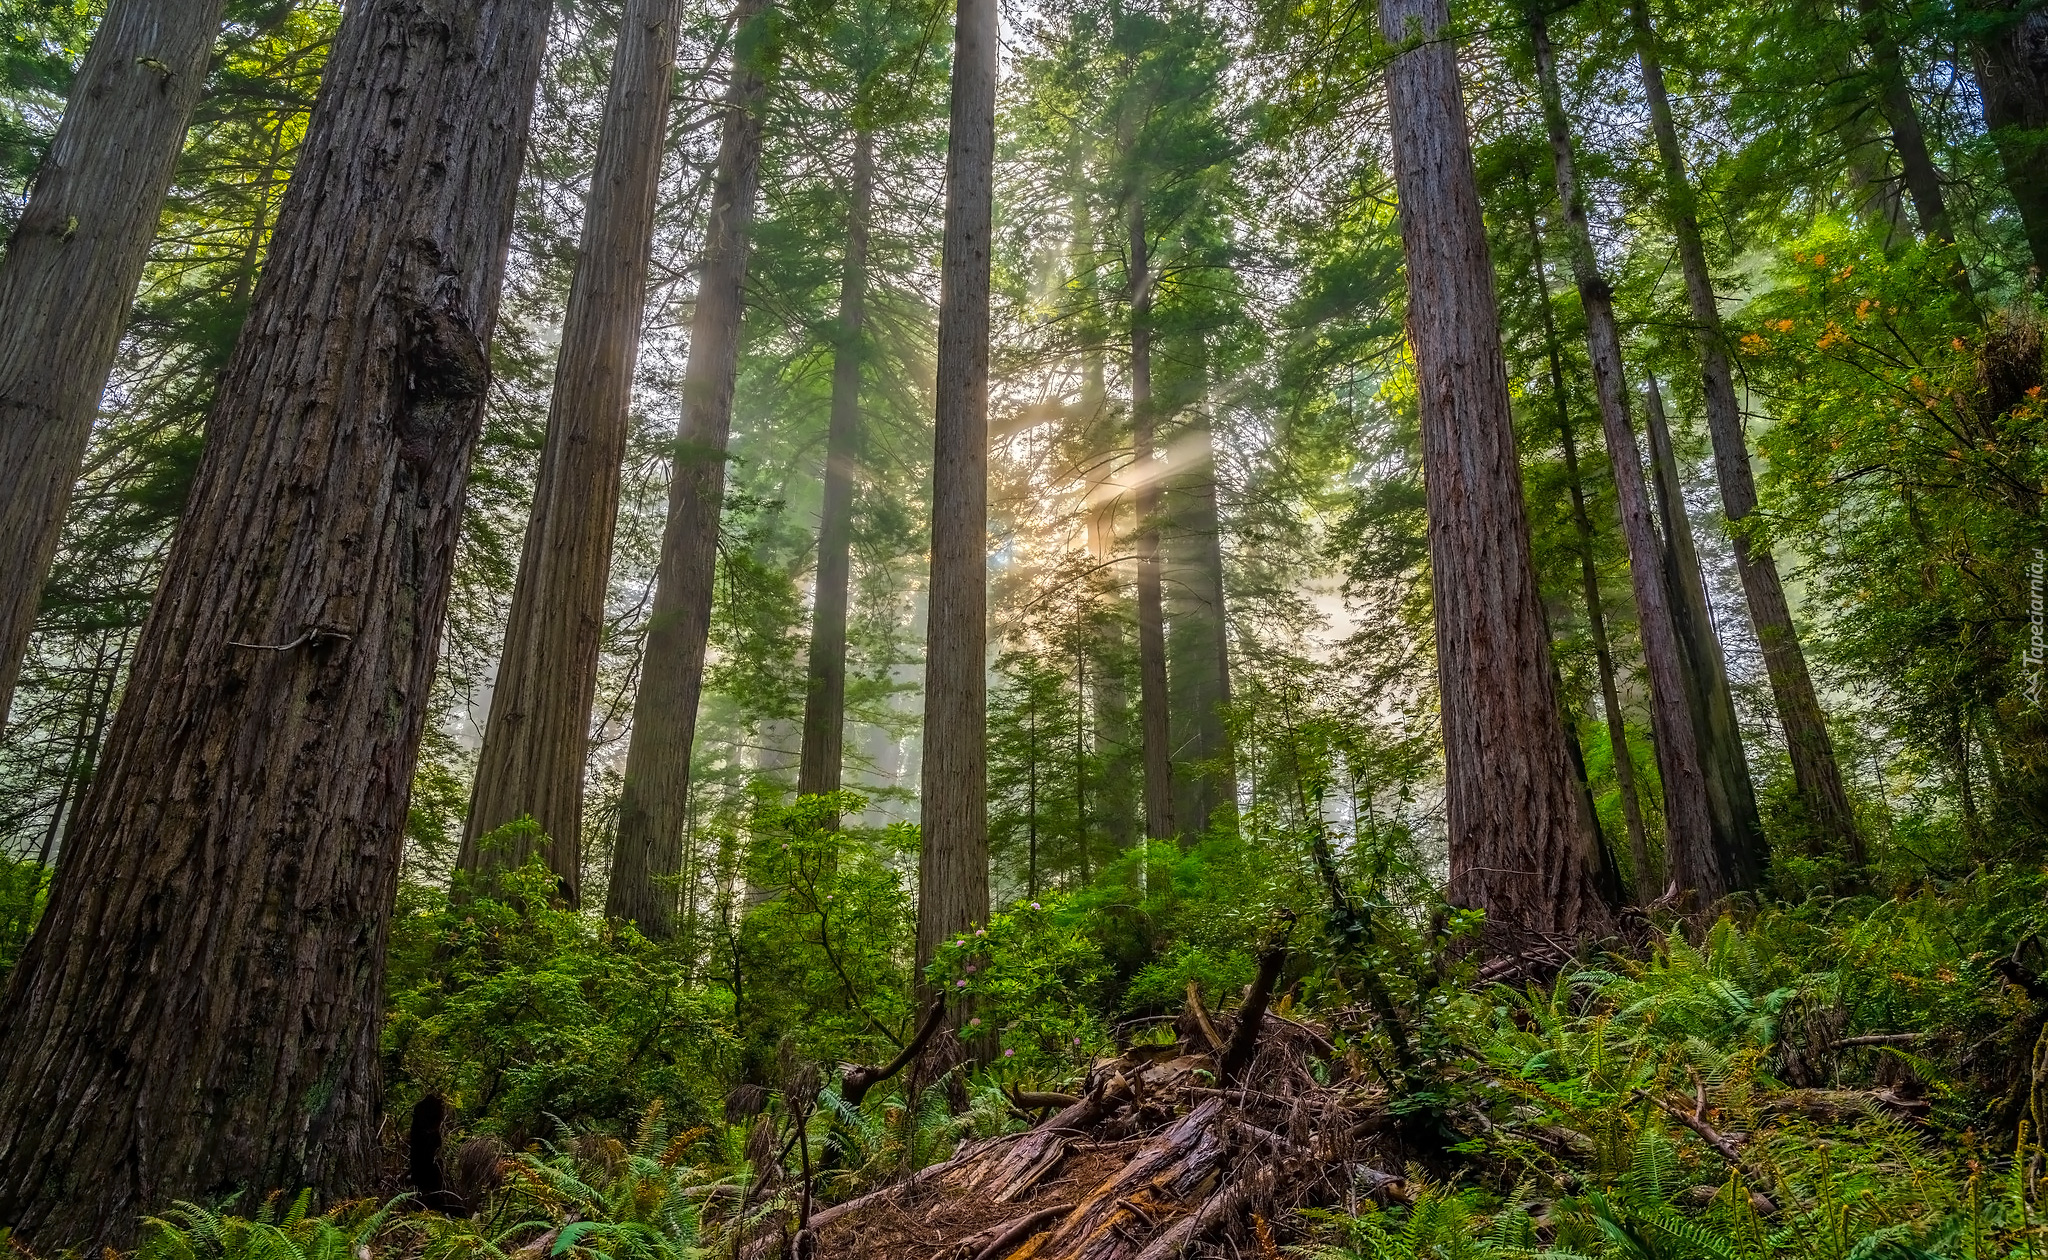 Las, Drzewa, Przebijające światło, Mgła, Rośliny, Paprocie, Park Narodowy Redwood, Kalifornia, Stany Zjednoczone